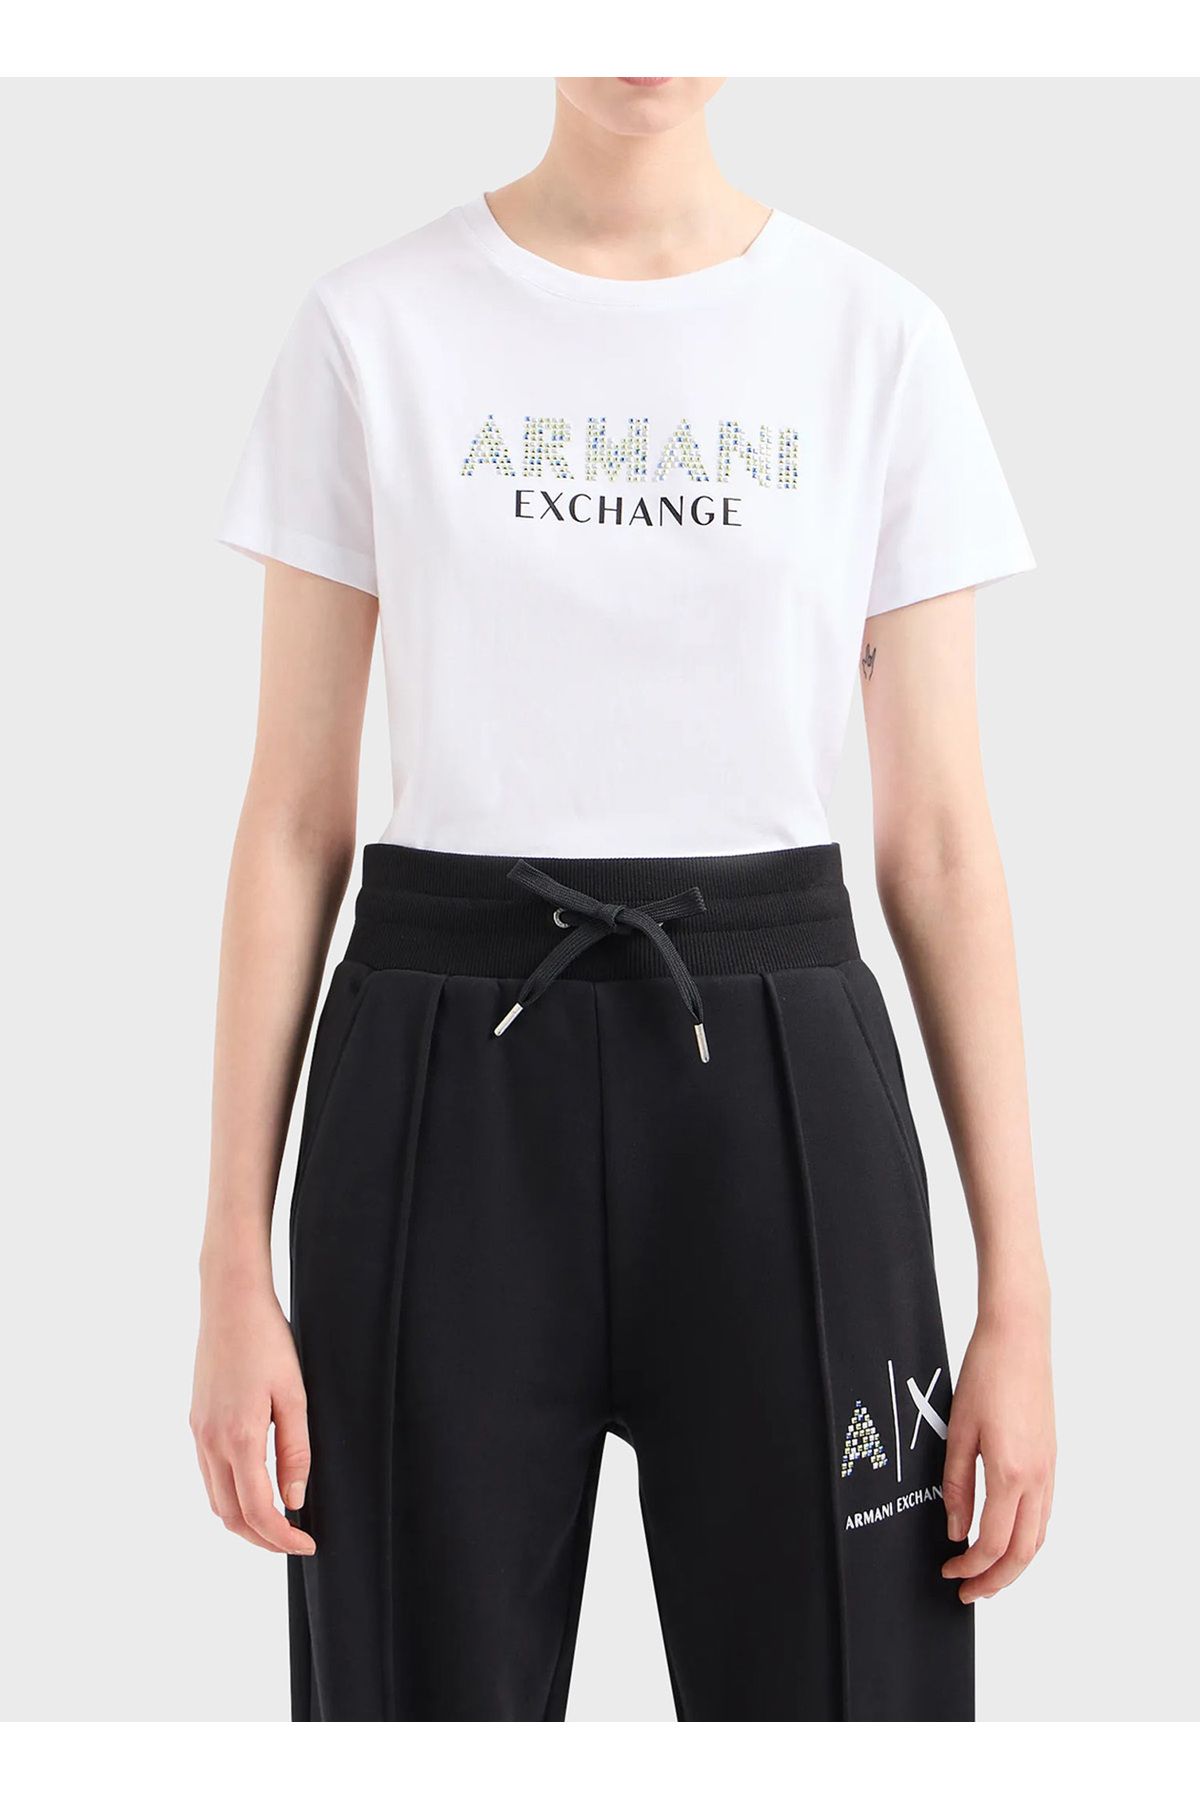 Armani Exchange Bisiklet Yaka Baskılı Beyaz Kadın T-shirt 3dyt13